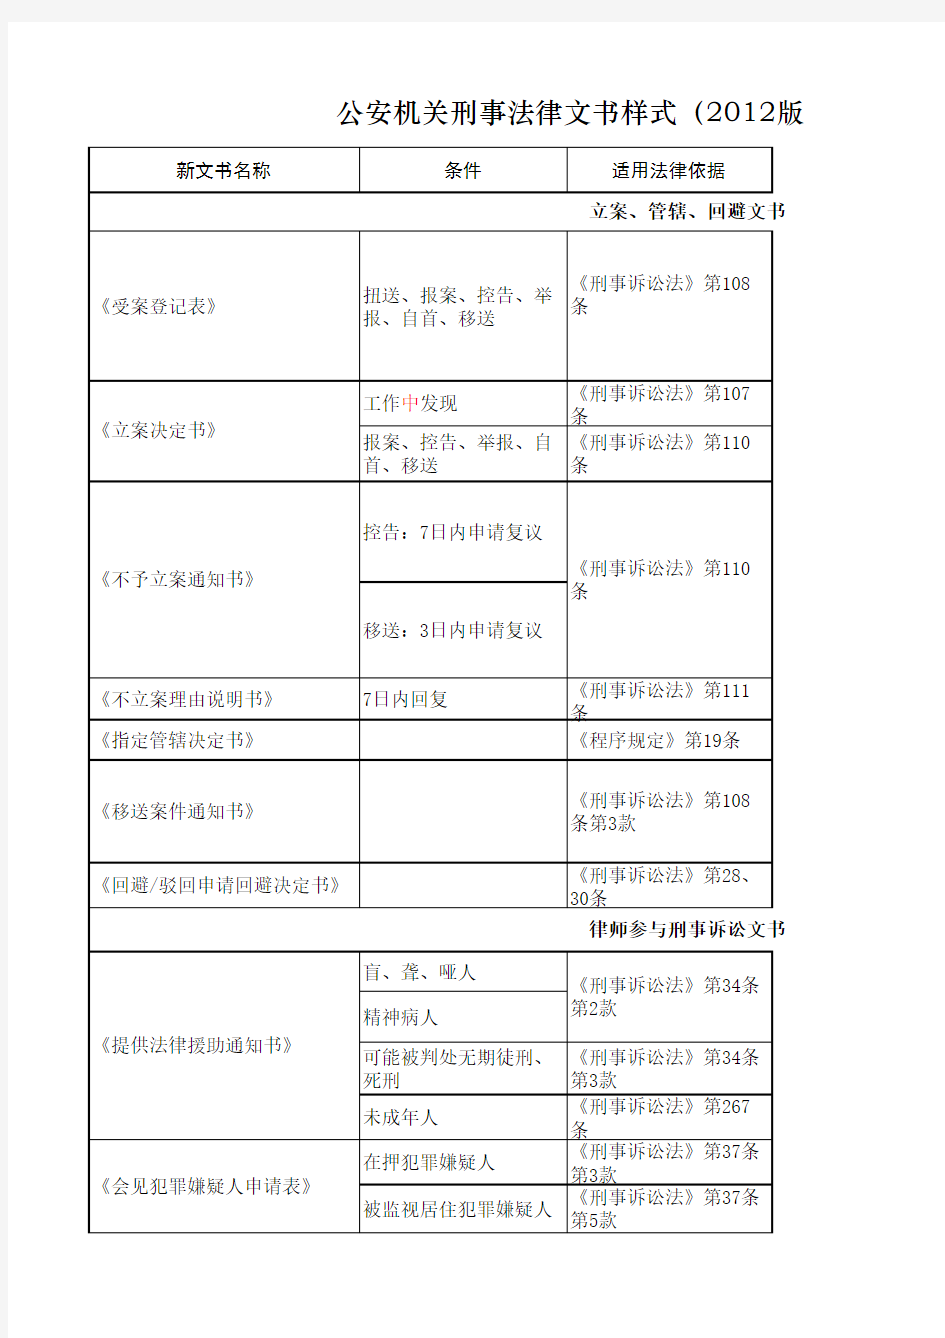 公安机关刑事法律文书样式(2012版)填写规范参考表